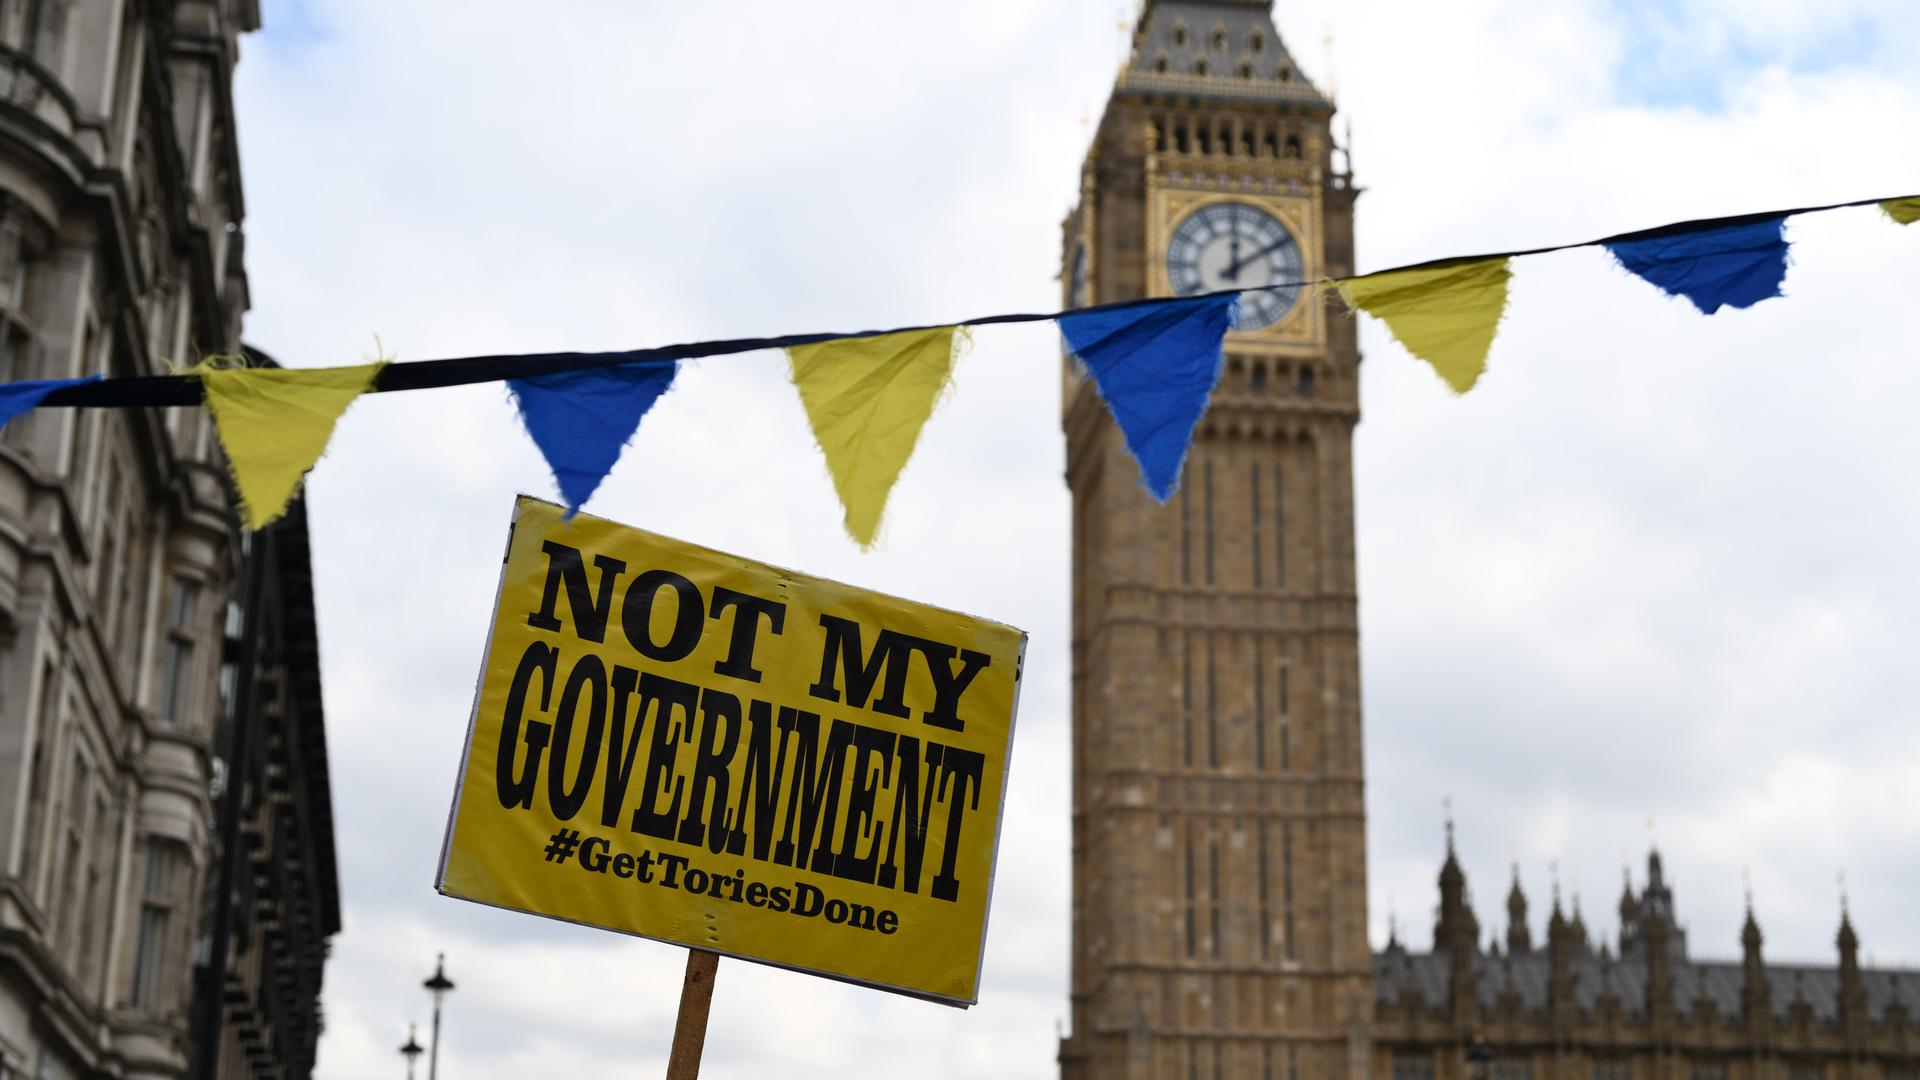 Ein Schild mit der Aufschrift "Not my government, get tories done" wird bei einer Demonstration am Londoner Big Ben hochgehalten.